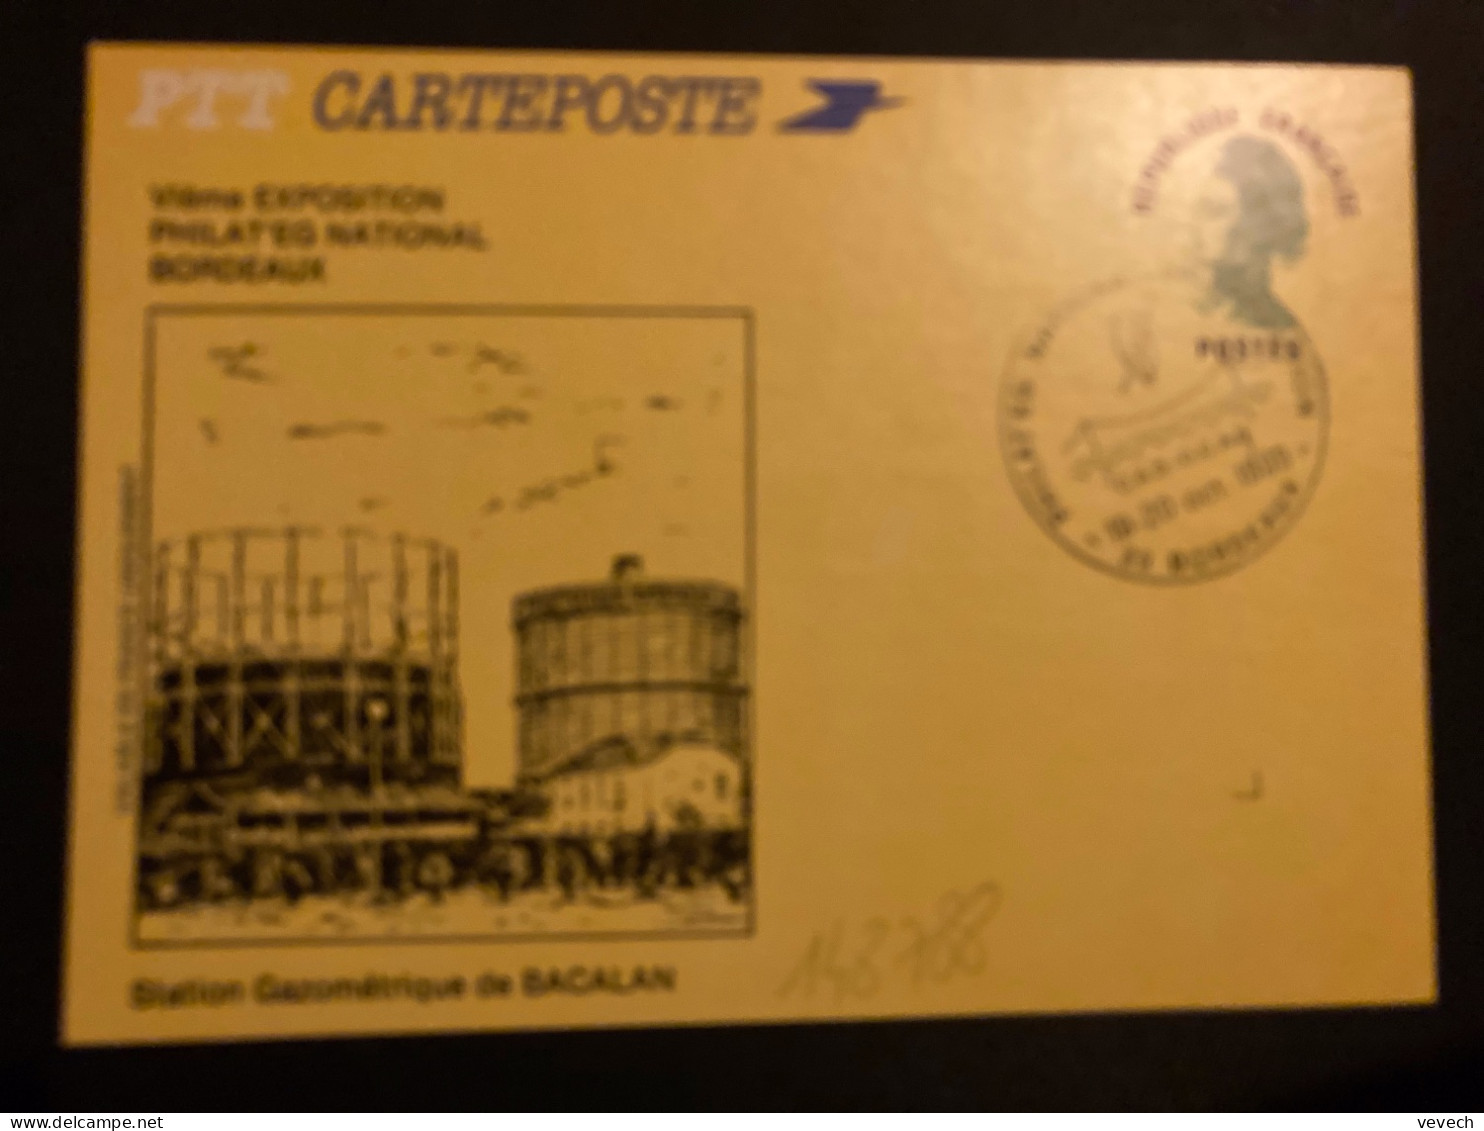 CP EP LIBERTE VERT OBL.19-20 Oct. 1985 33 BORDEAUX PHILAT'EG NATIONAL Vie EXPOSITION - Briefmarkenausstellungen